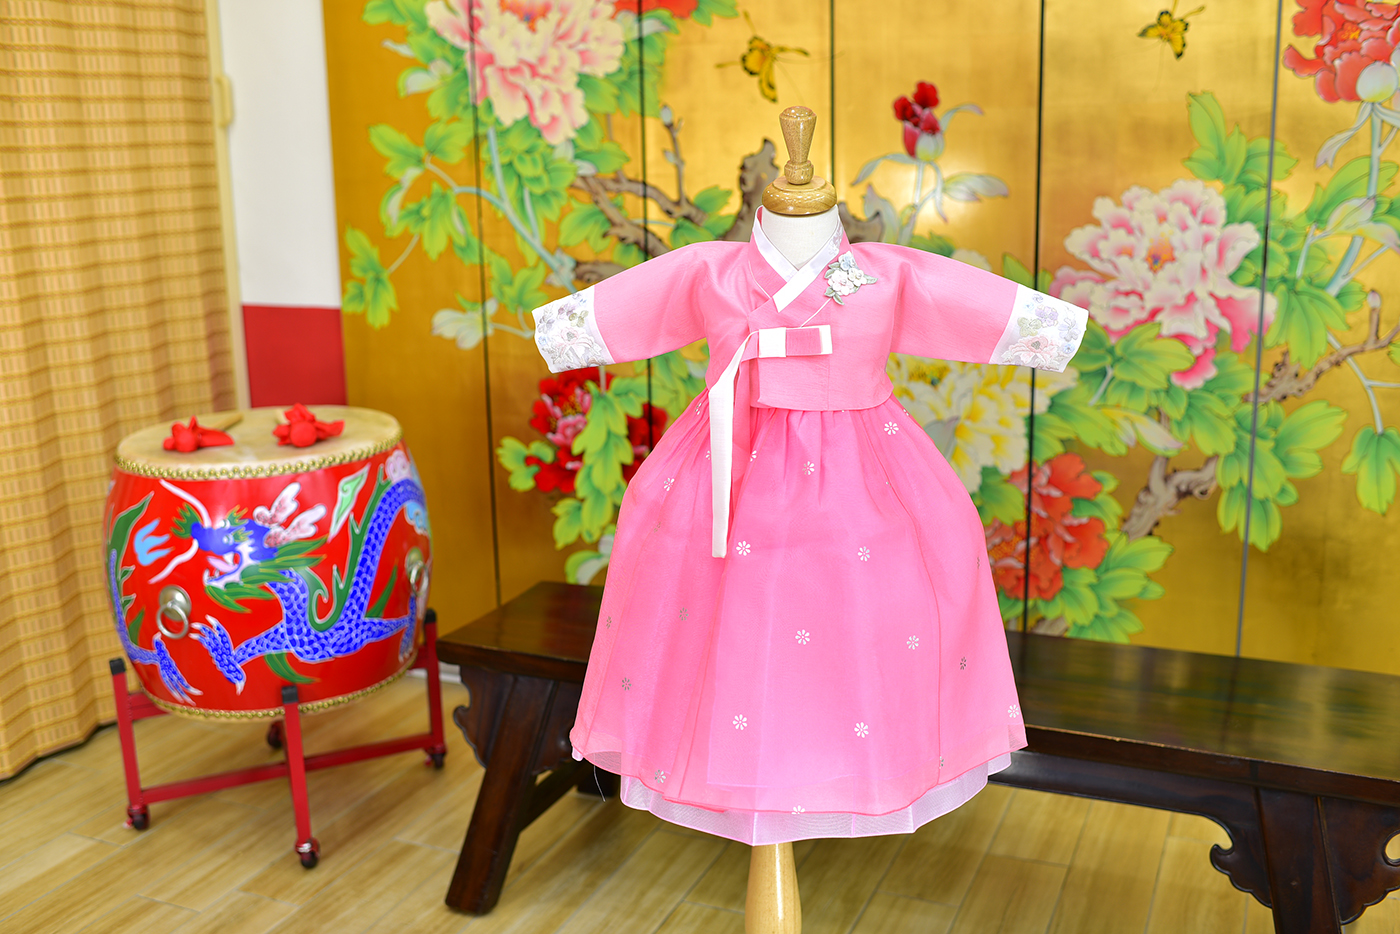 2023-11-24小孩宮廷韓服禮服照。甜美款式 玫瑰粉系的新式韓服配色照片集